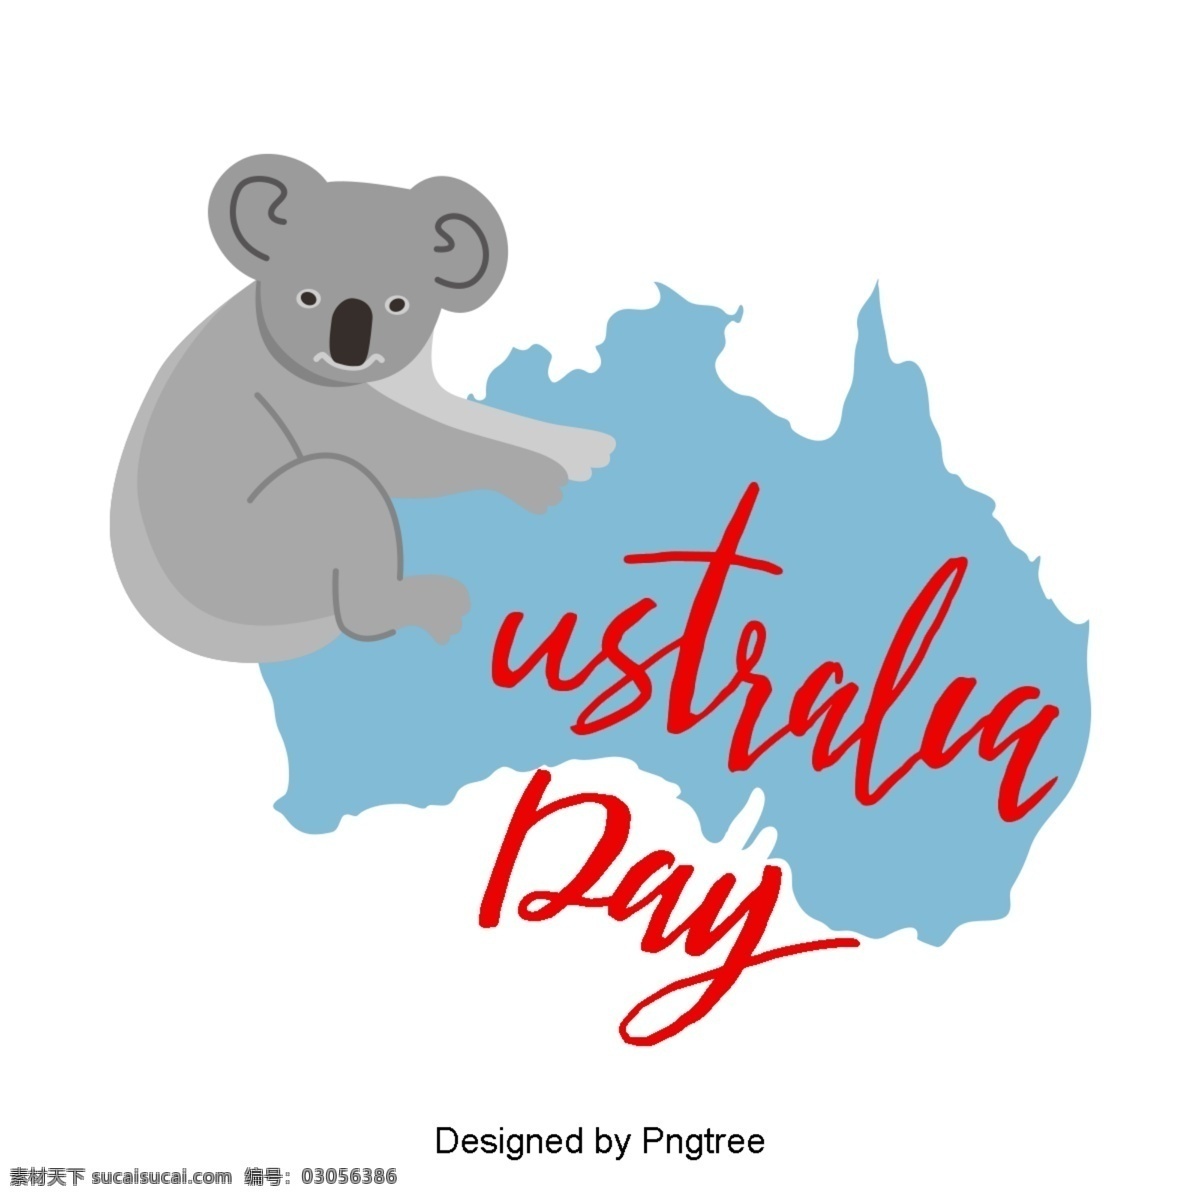 澳大利亚 蓝色 红色 地图 袋鼠 考拉 爱心 爱国 字体 澳大利亚日 旗帜